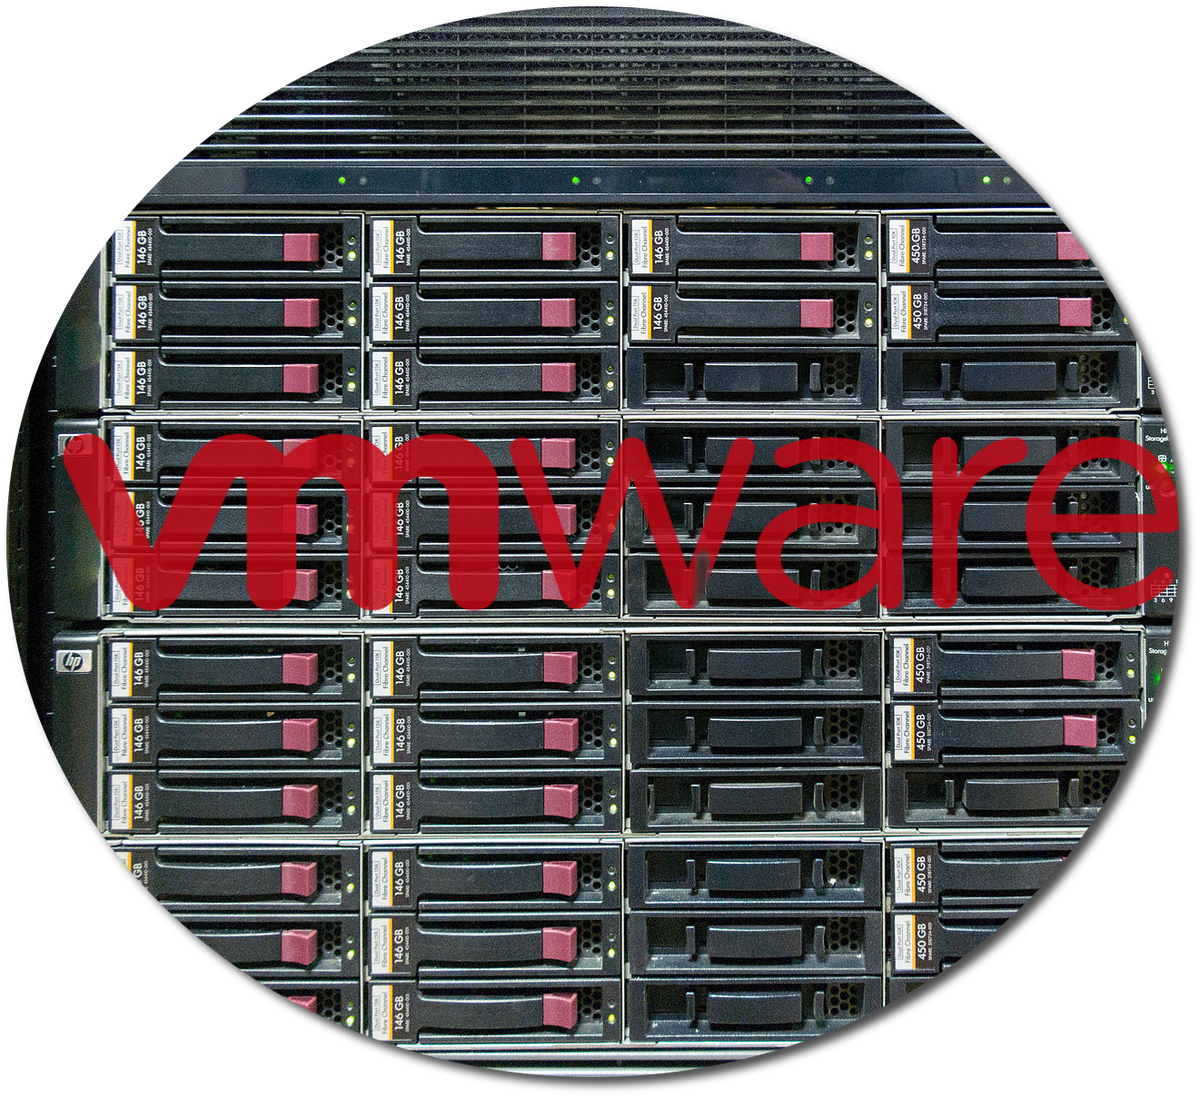 Hewlett-Packard Storage Hardware Computer Hewlettpackard Data Software Clipart